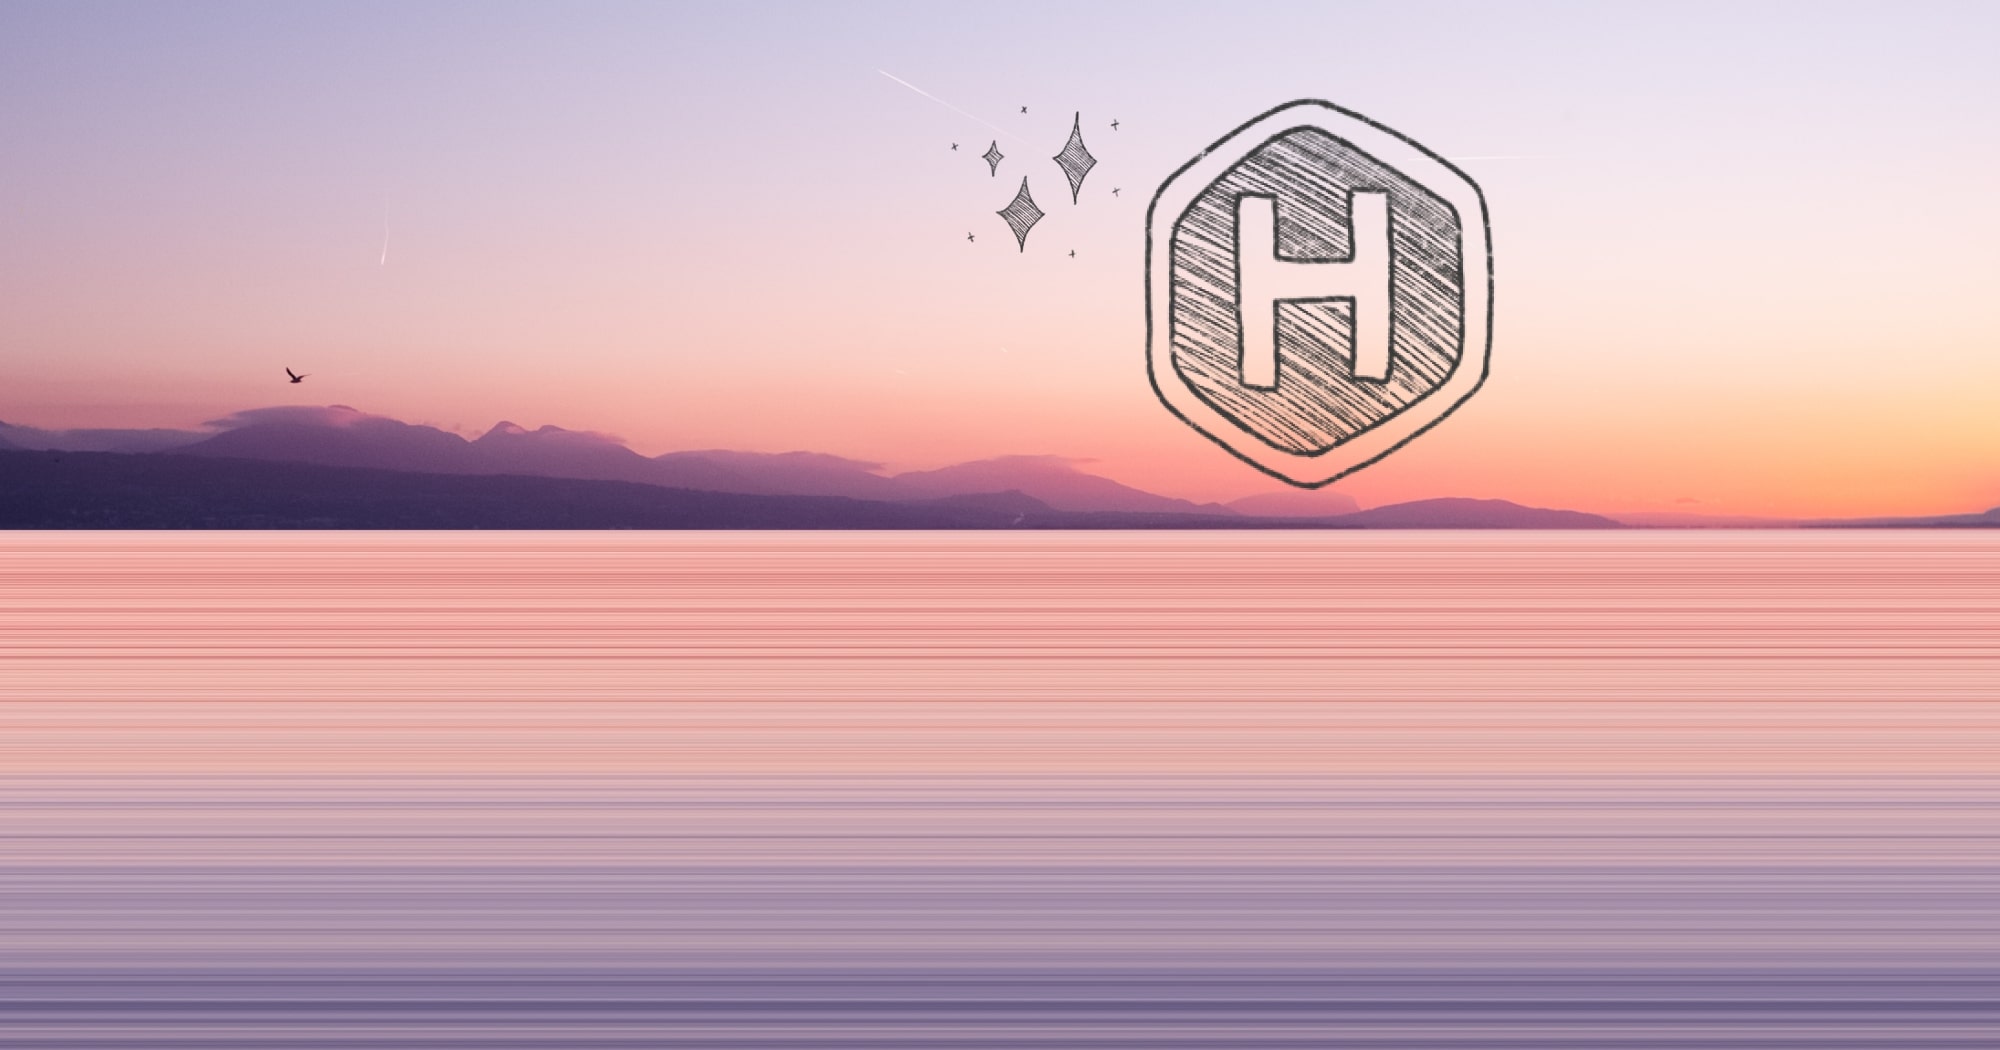 Photo illustration of Hugo logo on a horizon